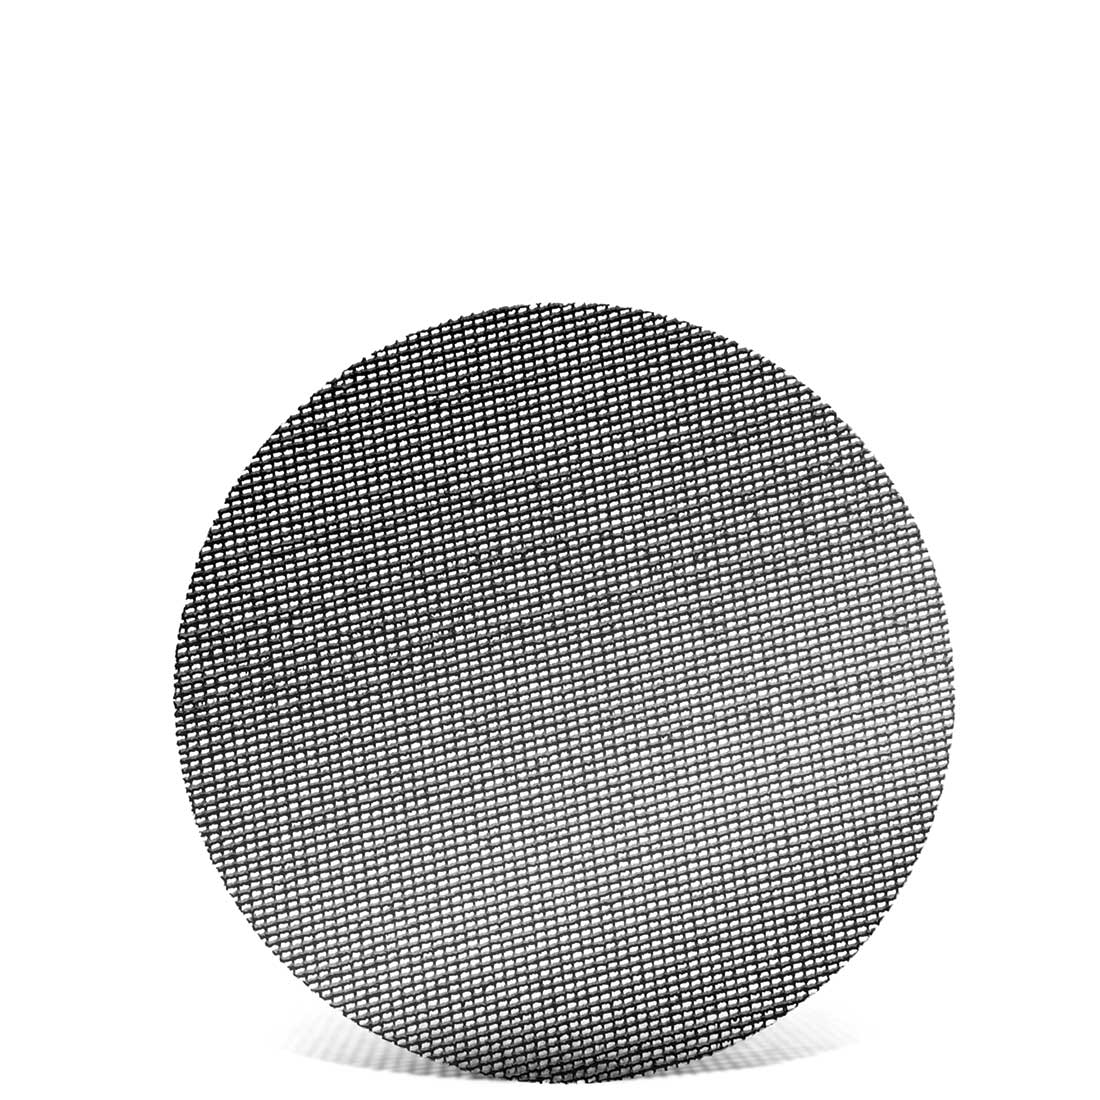 MENZER Schleifgitter für Einscheibenmaschinen, K60–220, Ø 406 mm / Gitter / Siliciumcarbid